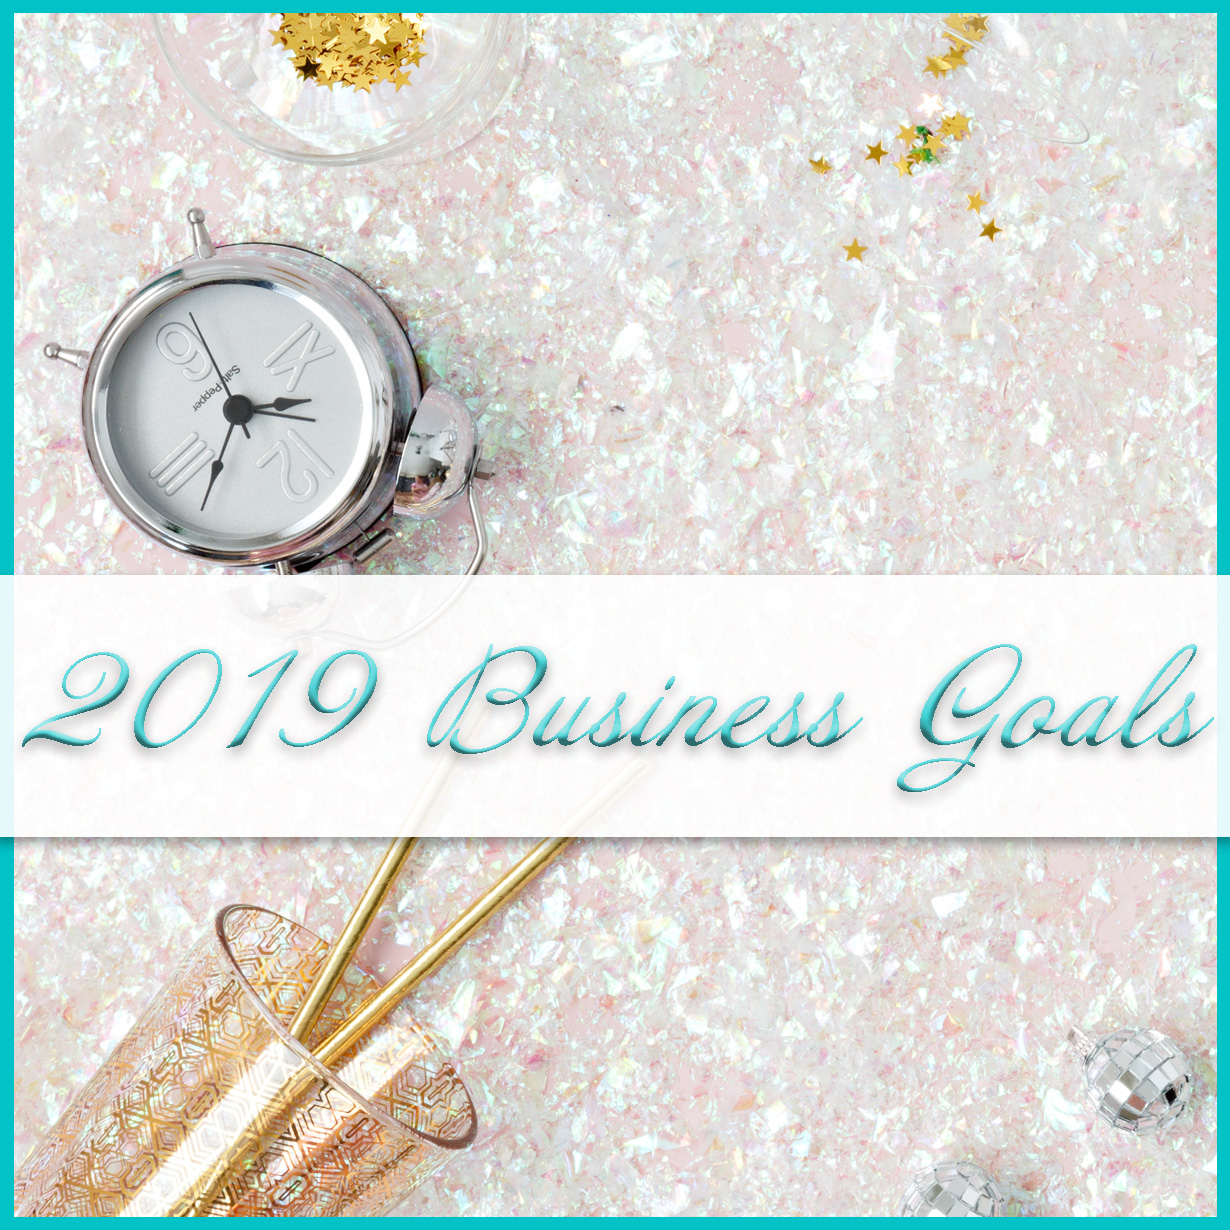 2019 Business Goals